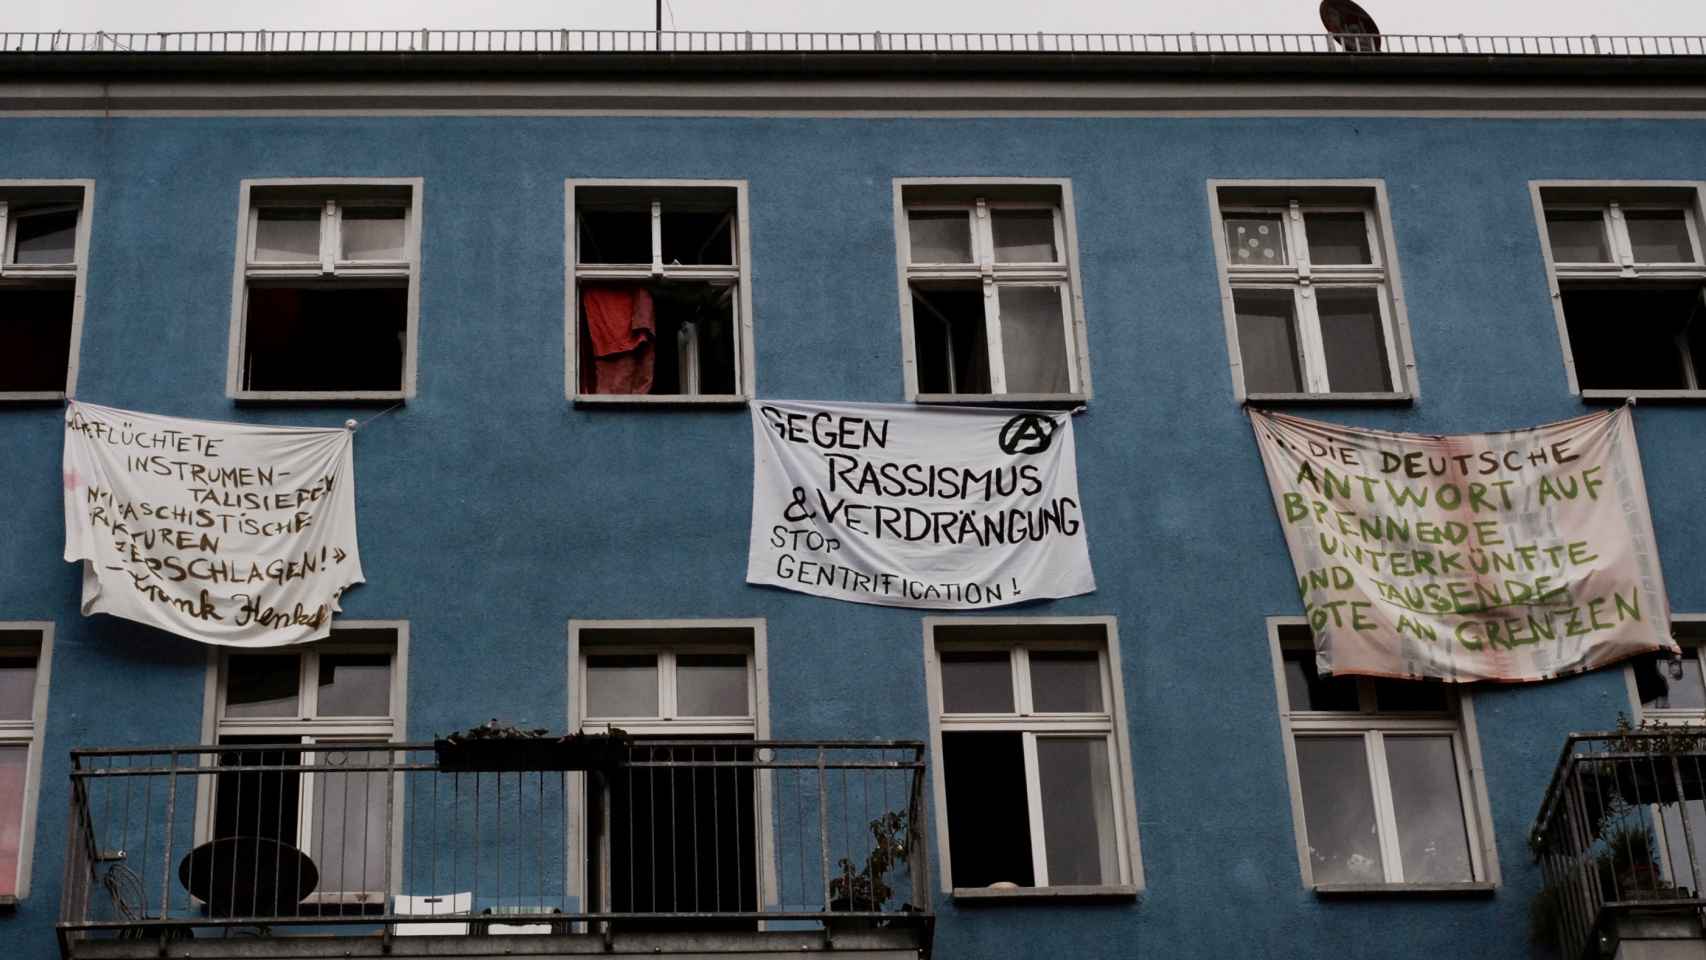 - Contra el racismo y la represión, reclama una de las pancartas de la fachada okupa.